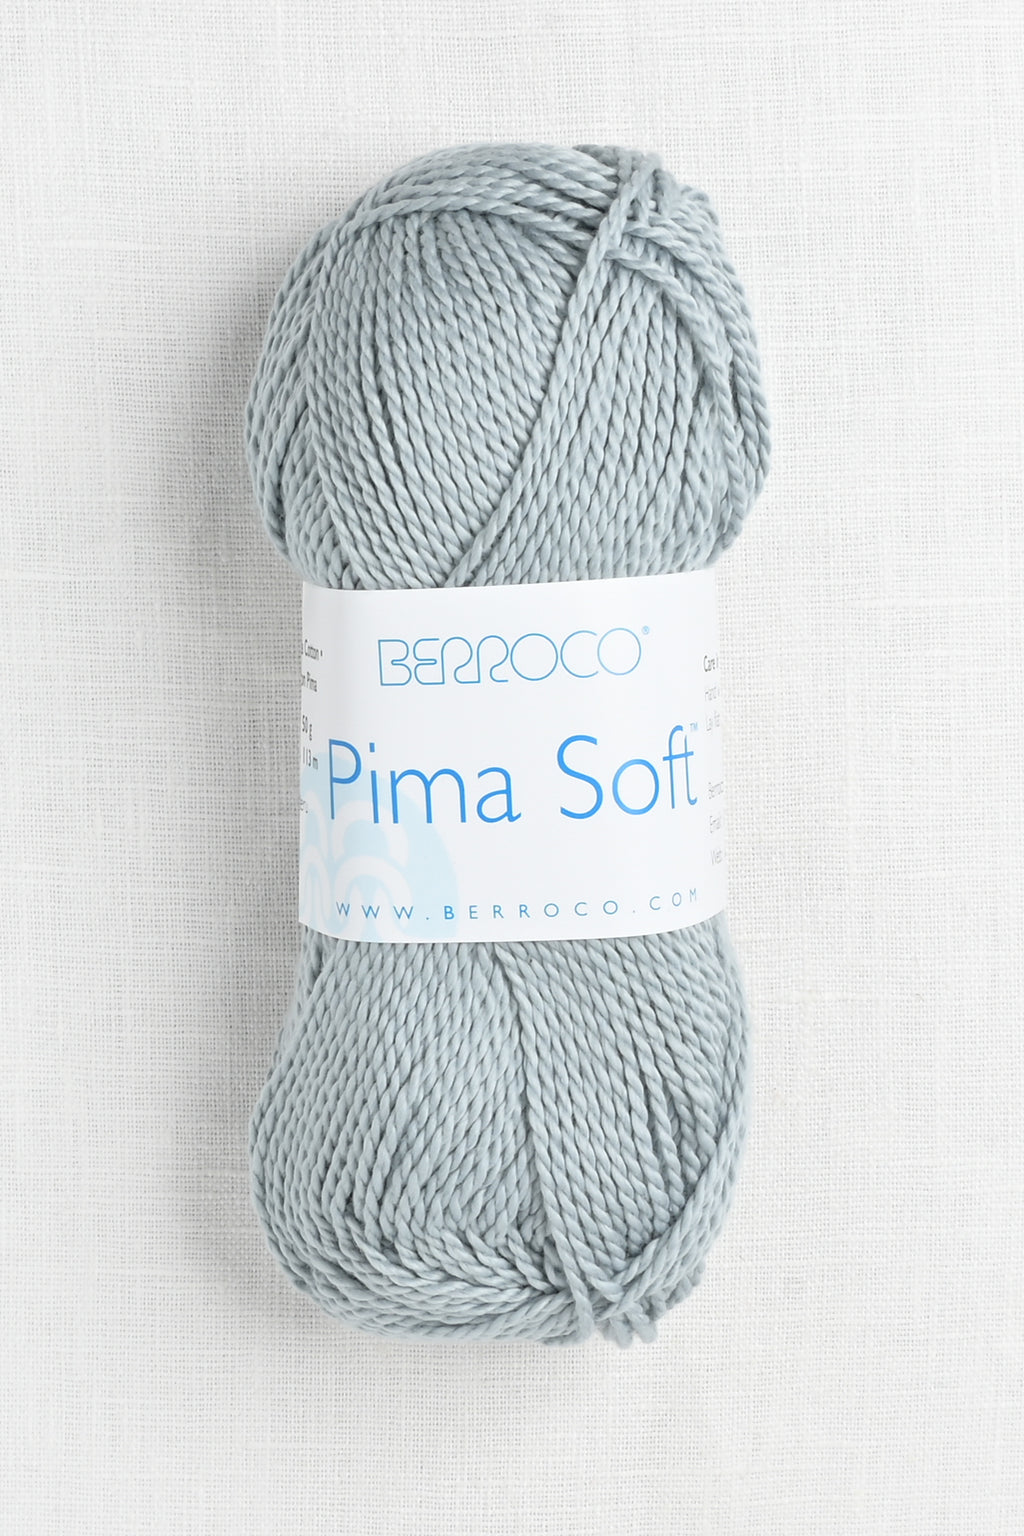 Berroco Pima Soft 4648 Thistle